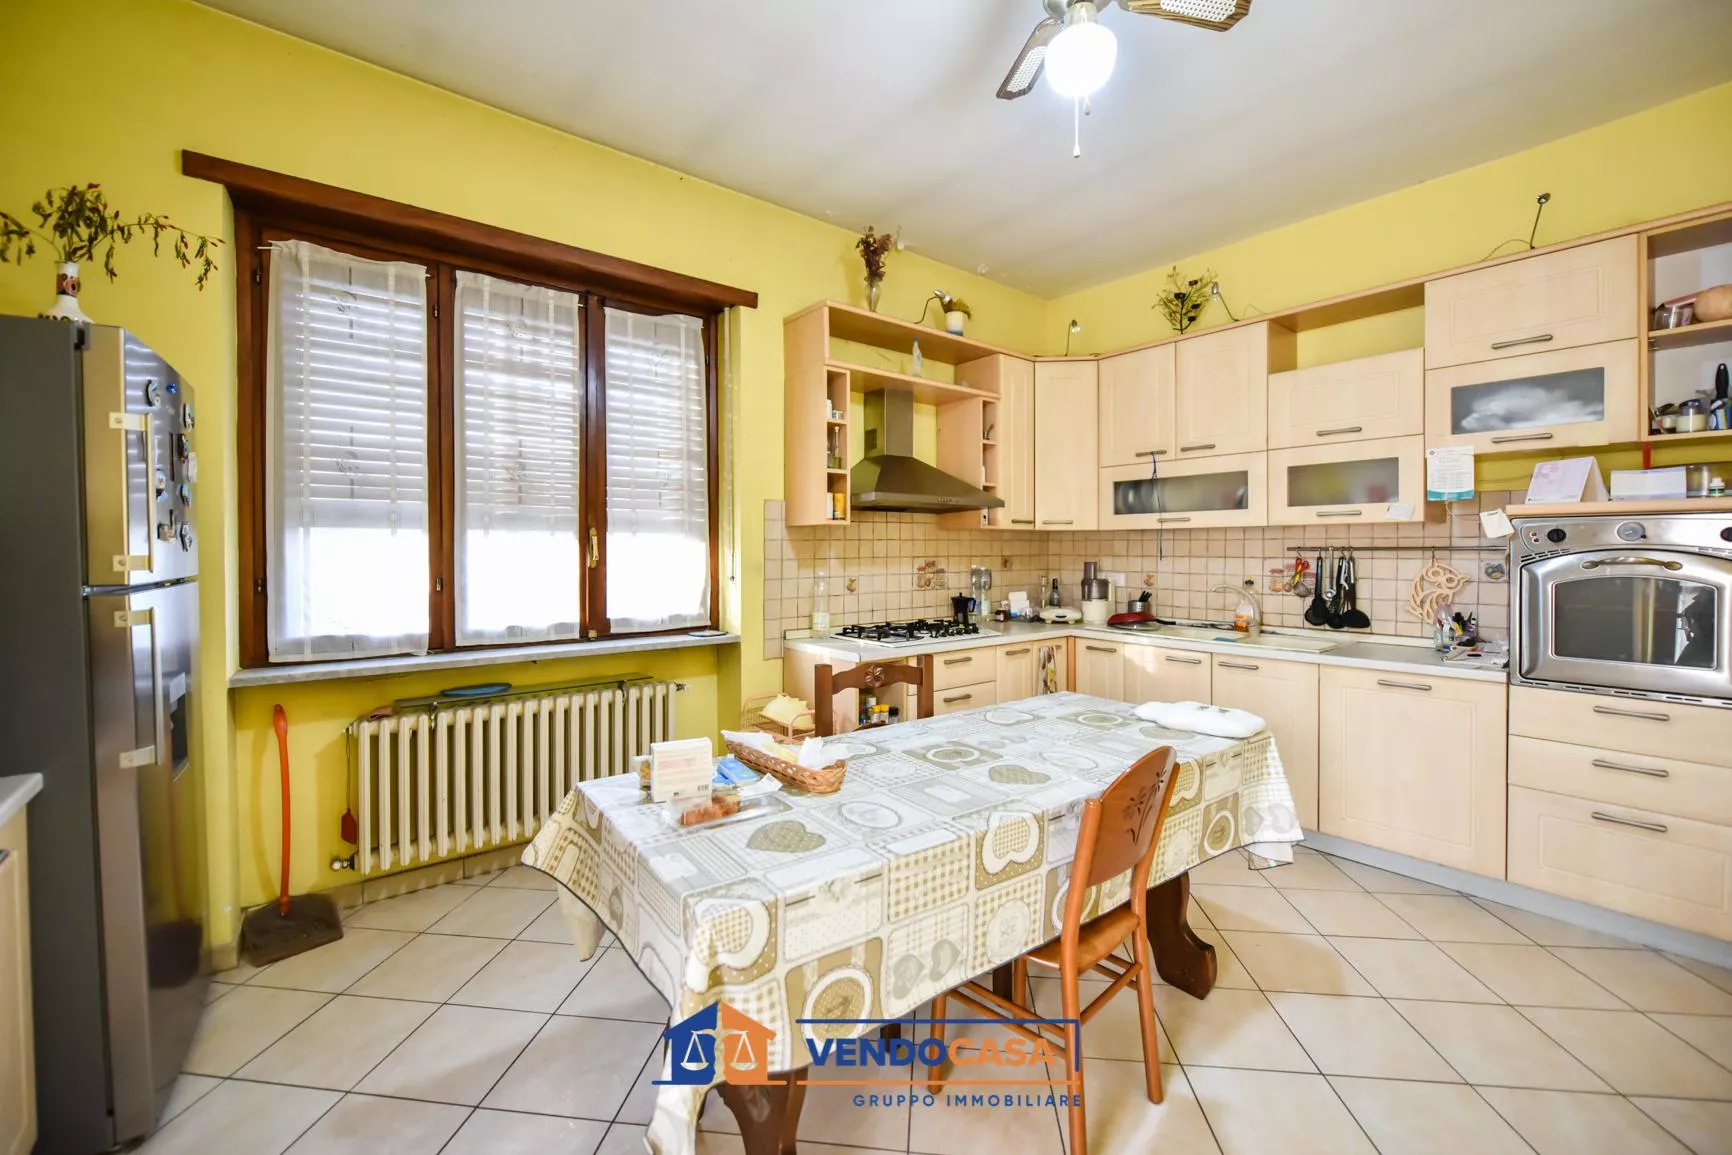 Immagine per Appartamento in vendita a Piobesi Torinese via Della Costituzione 7